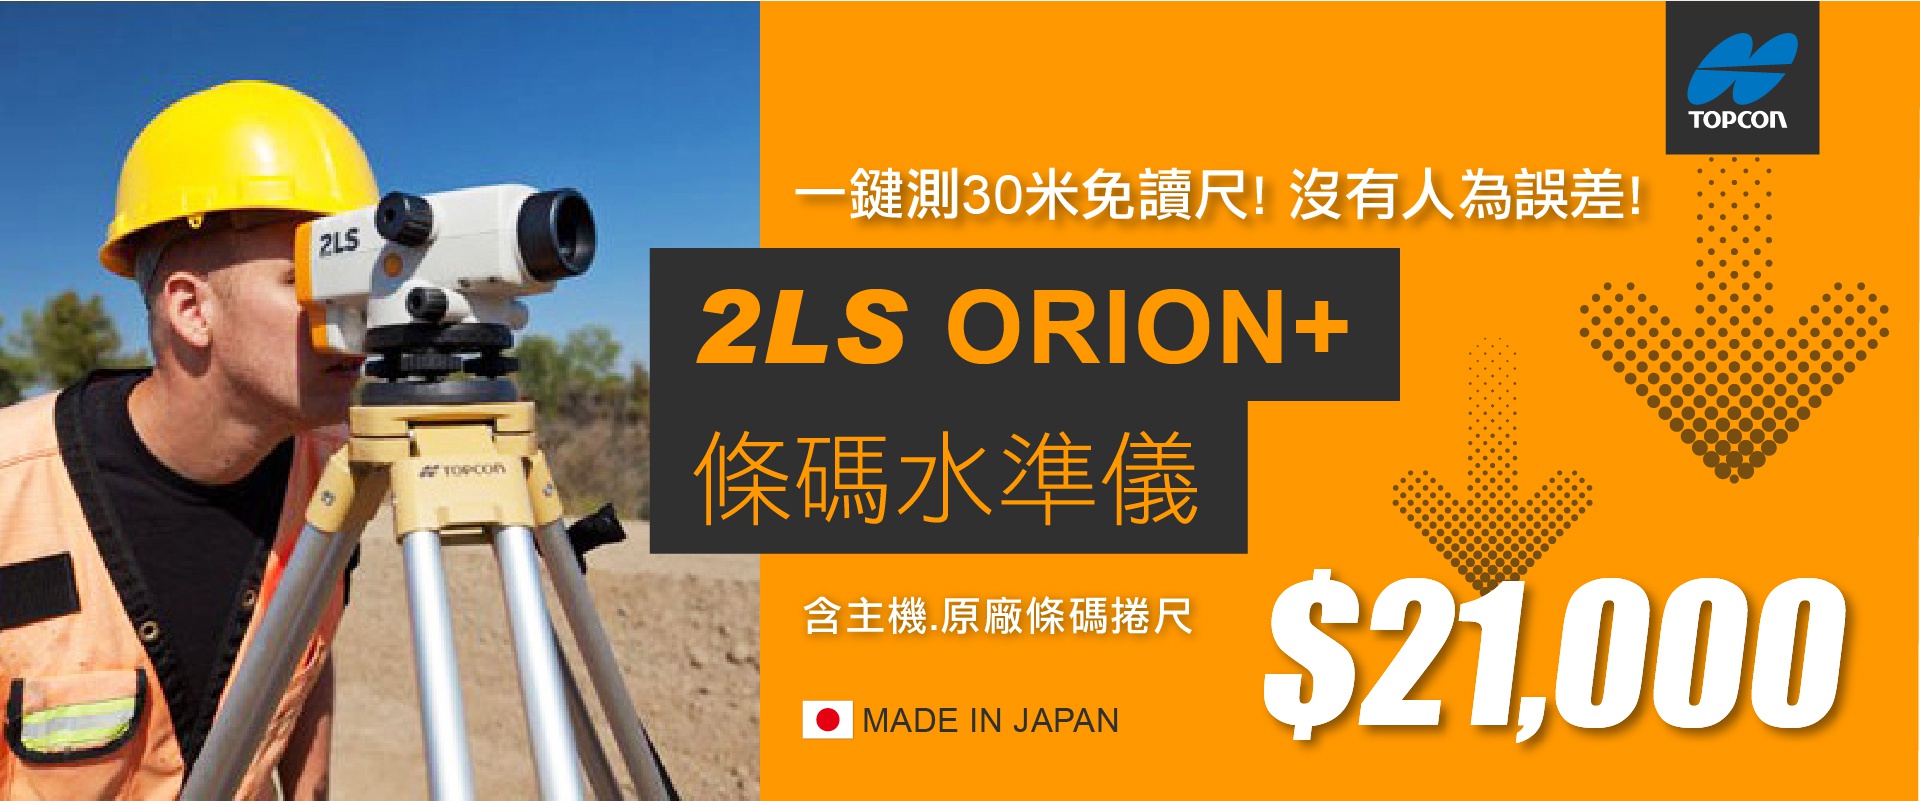 TOPCON 2LS Orion+條碼水準儀